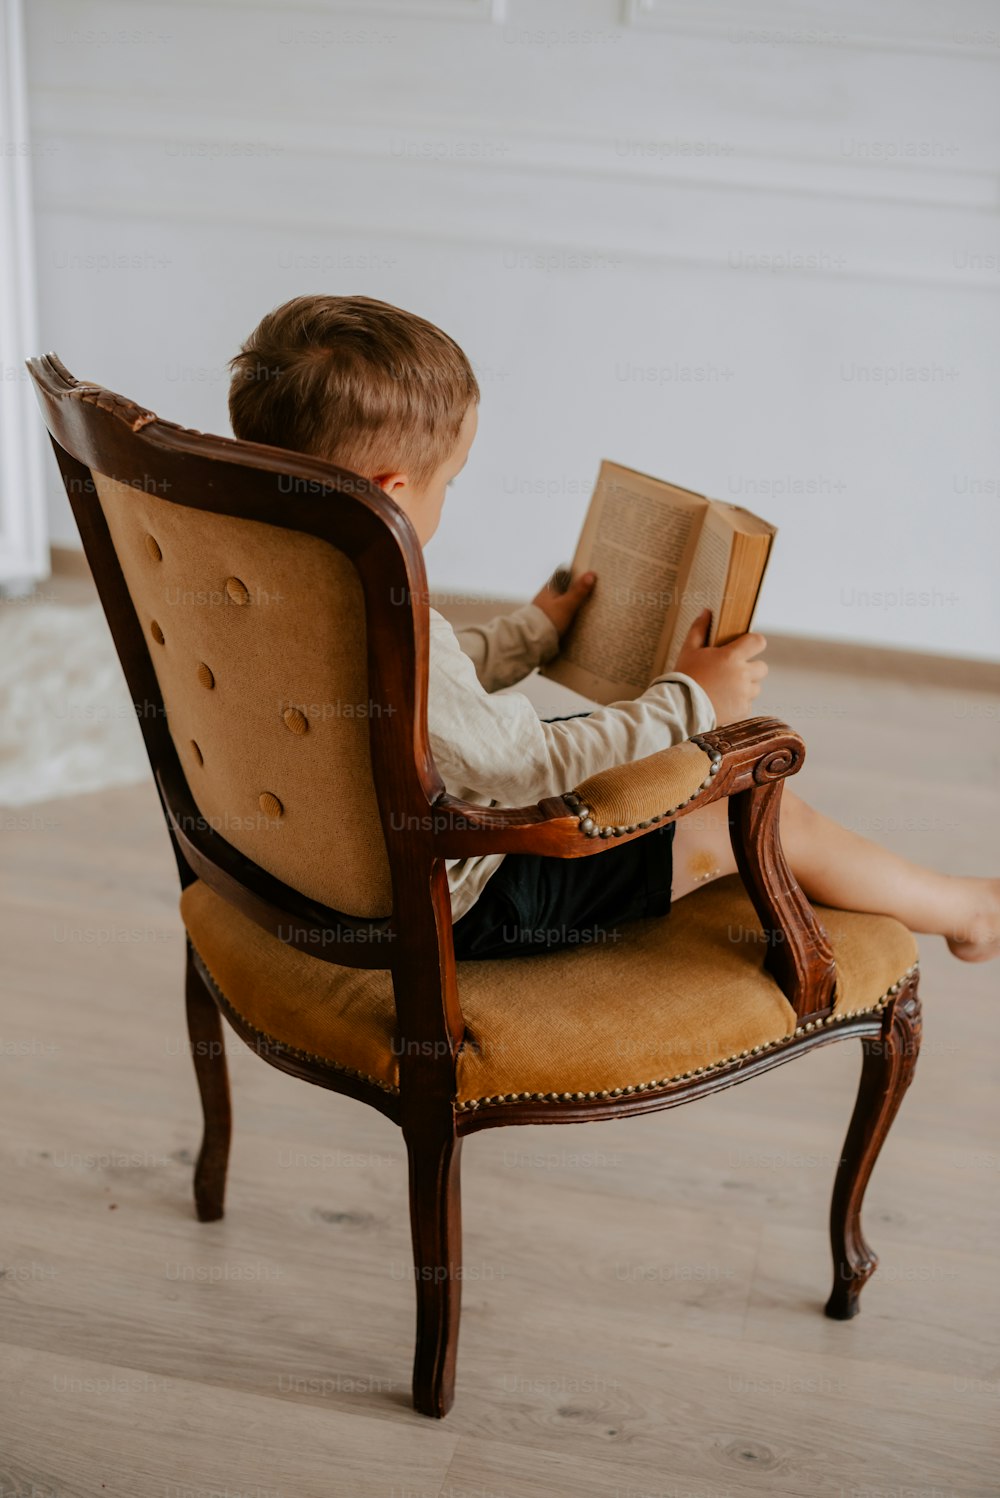 Un niño sentado en una silla leyendo un libro